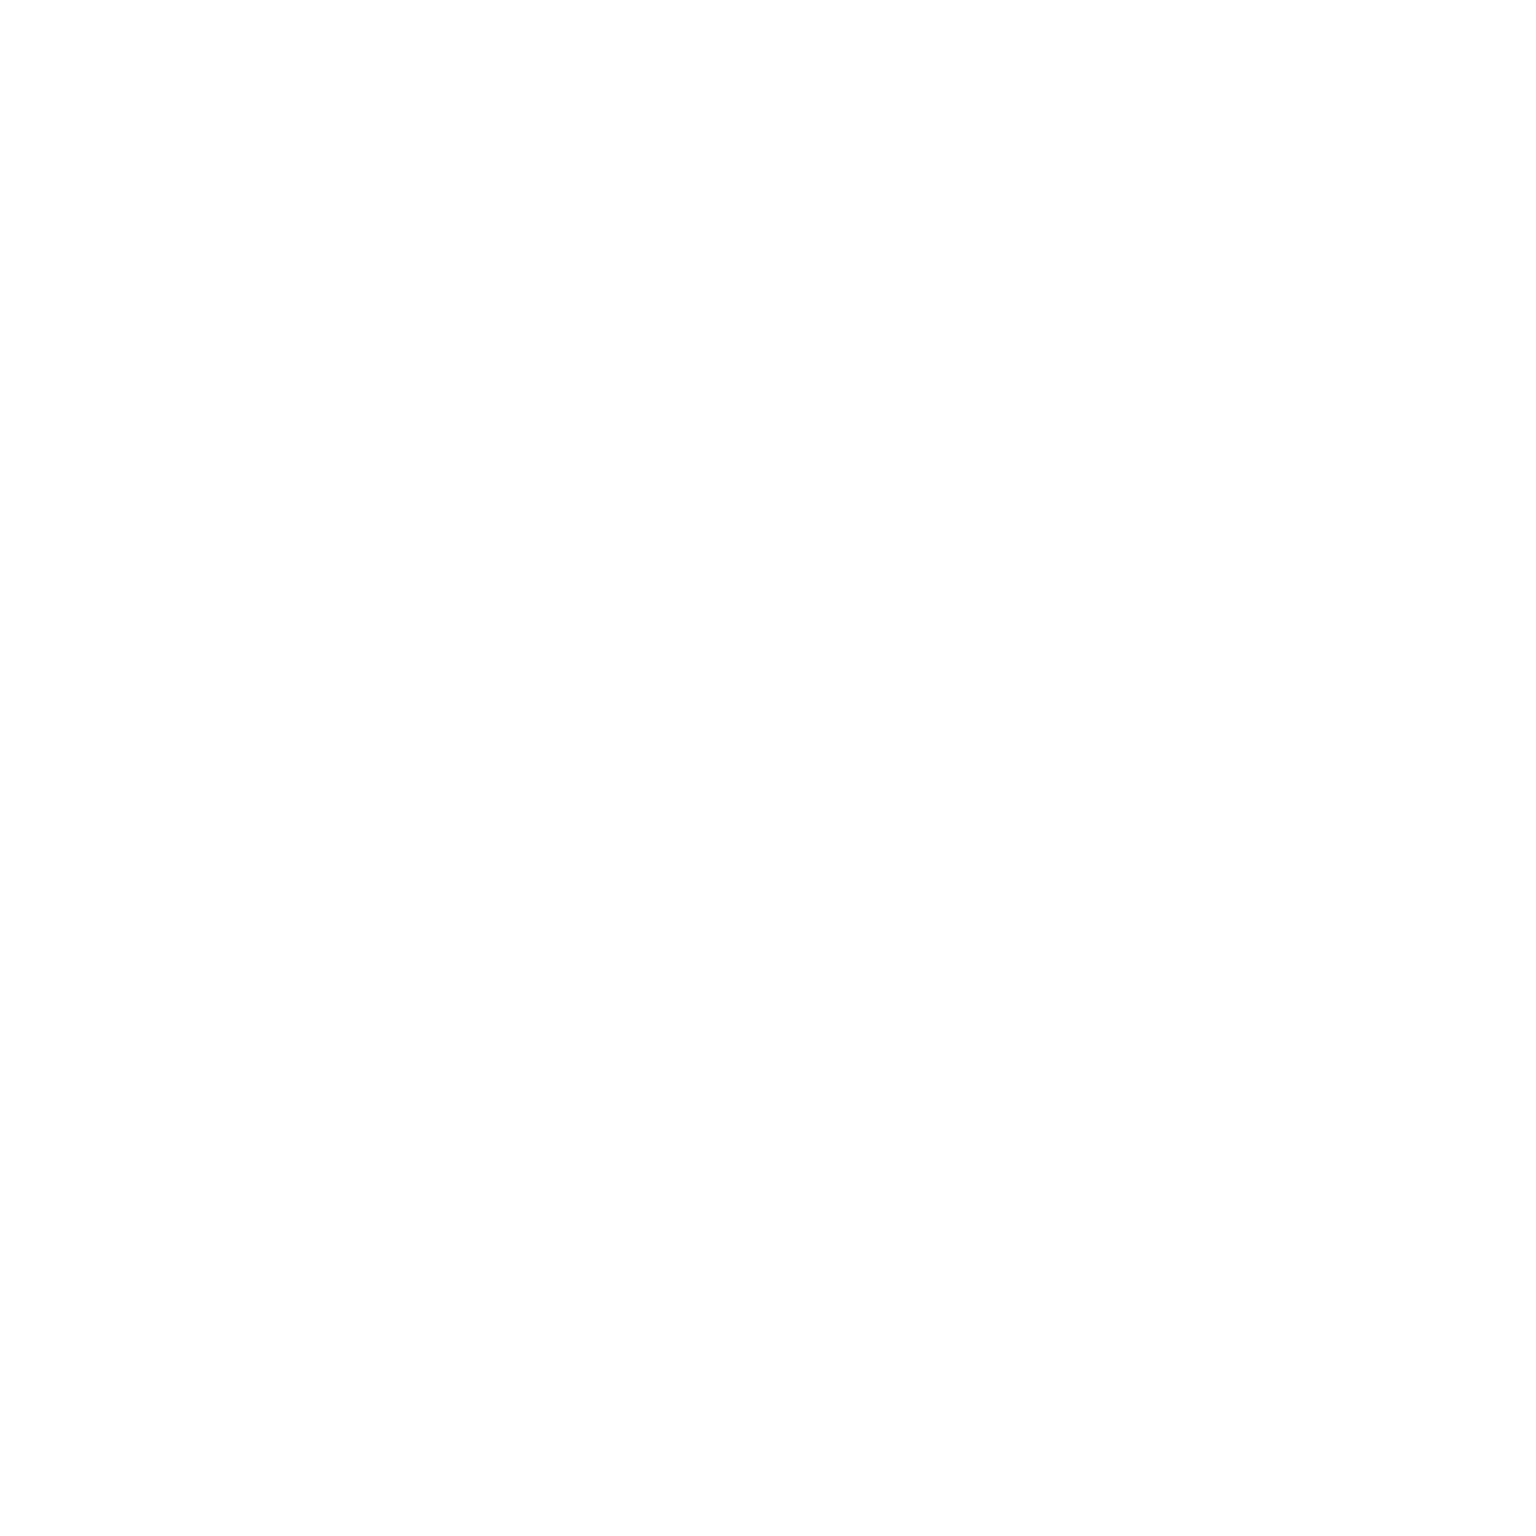 SDG 11 Rating